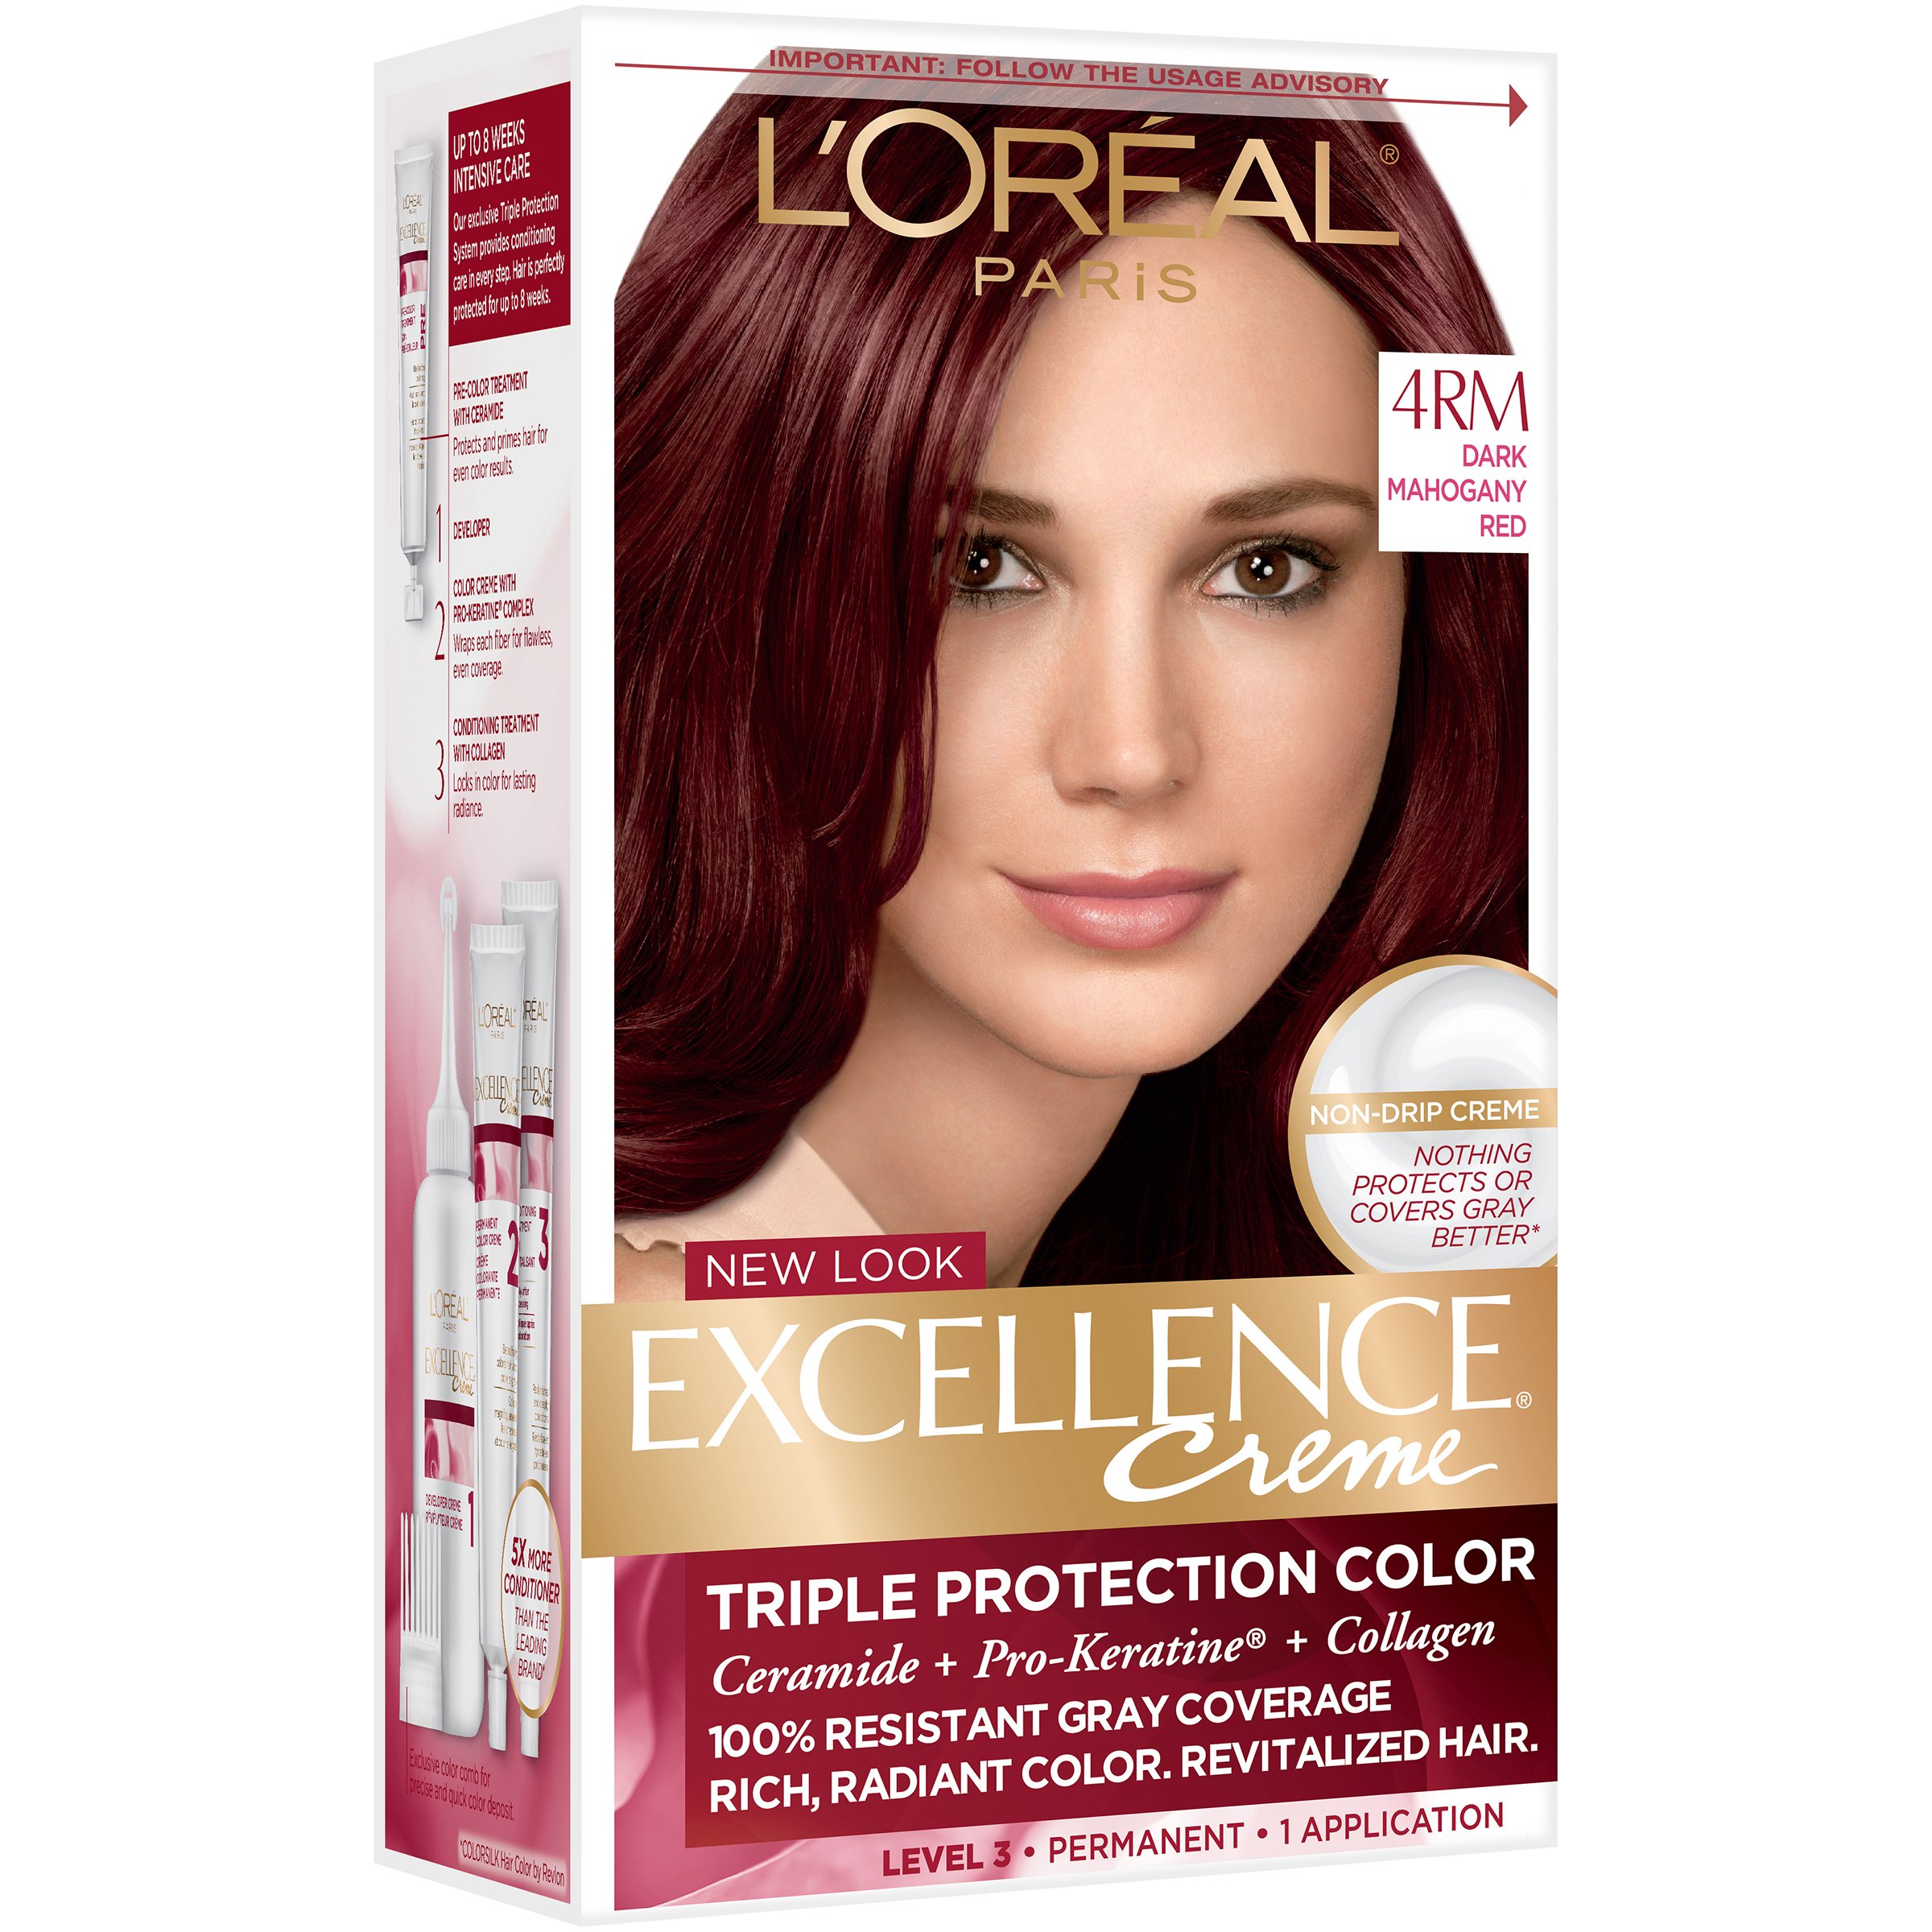 L'Oréal Paris Excellence Créme Permanent Hair Color, 4RM Dark Mahogany Red  - Shop Hair Care at H-E-B